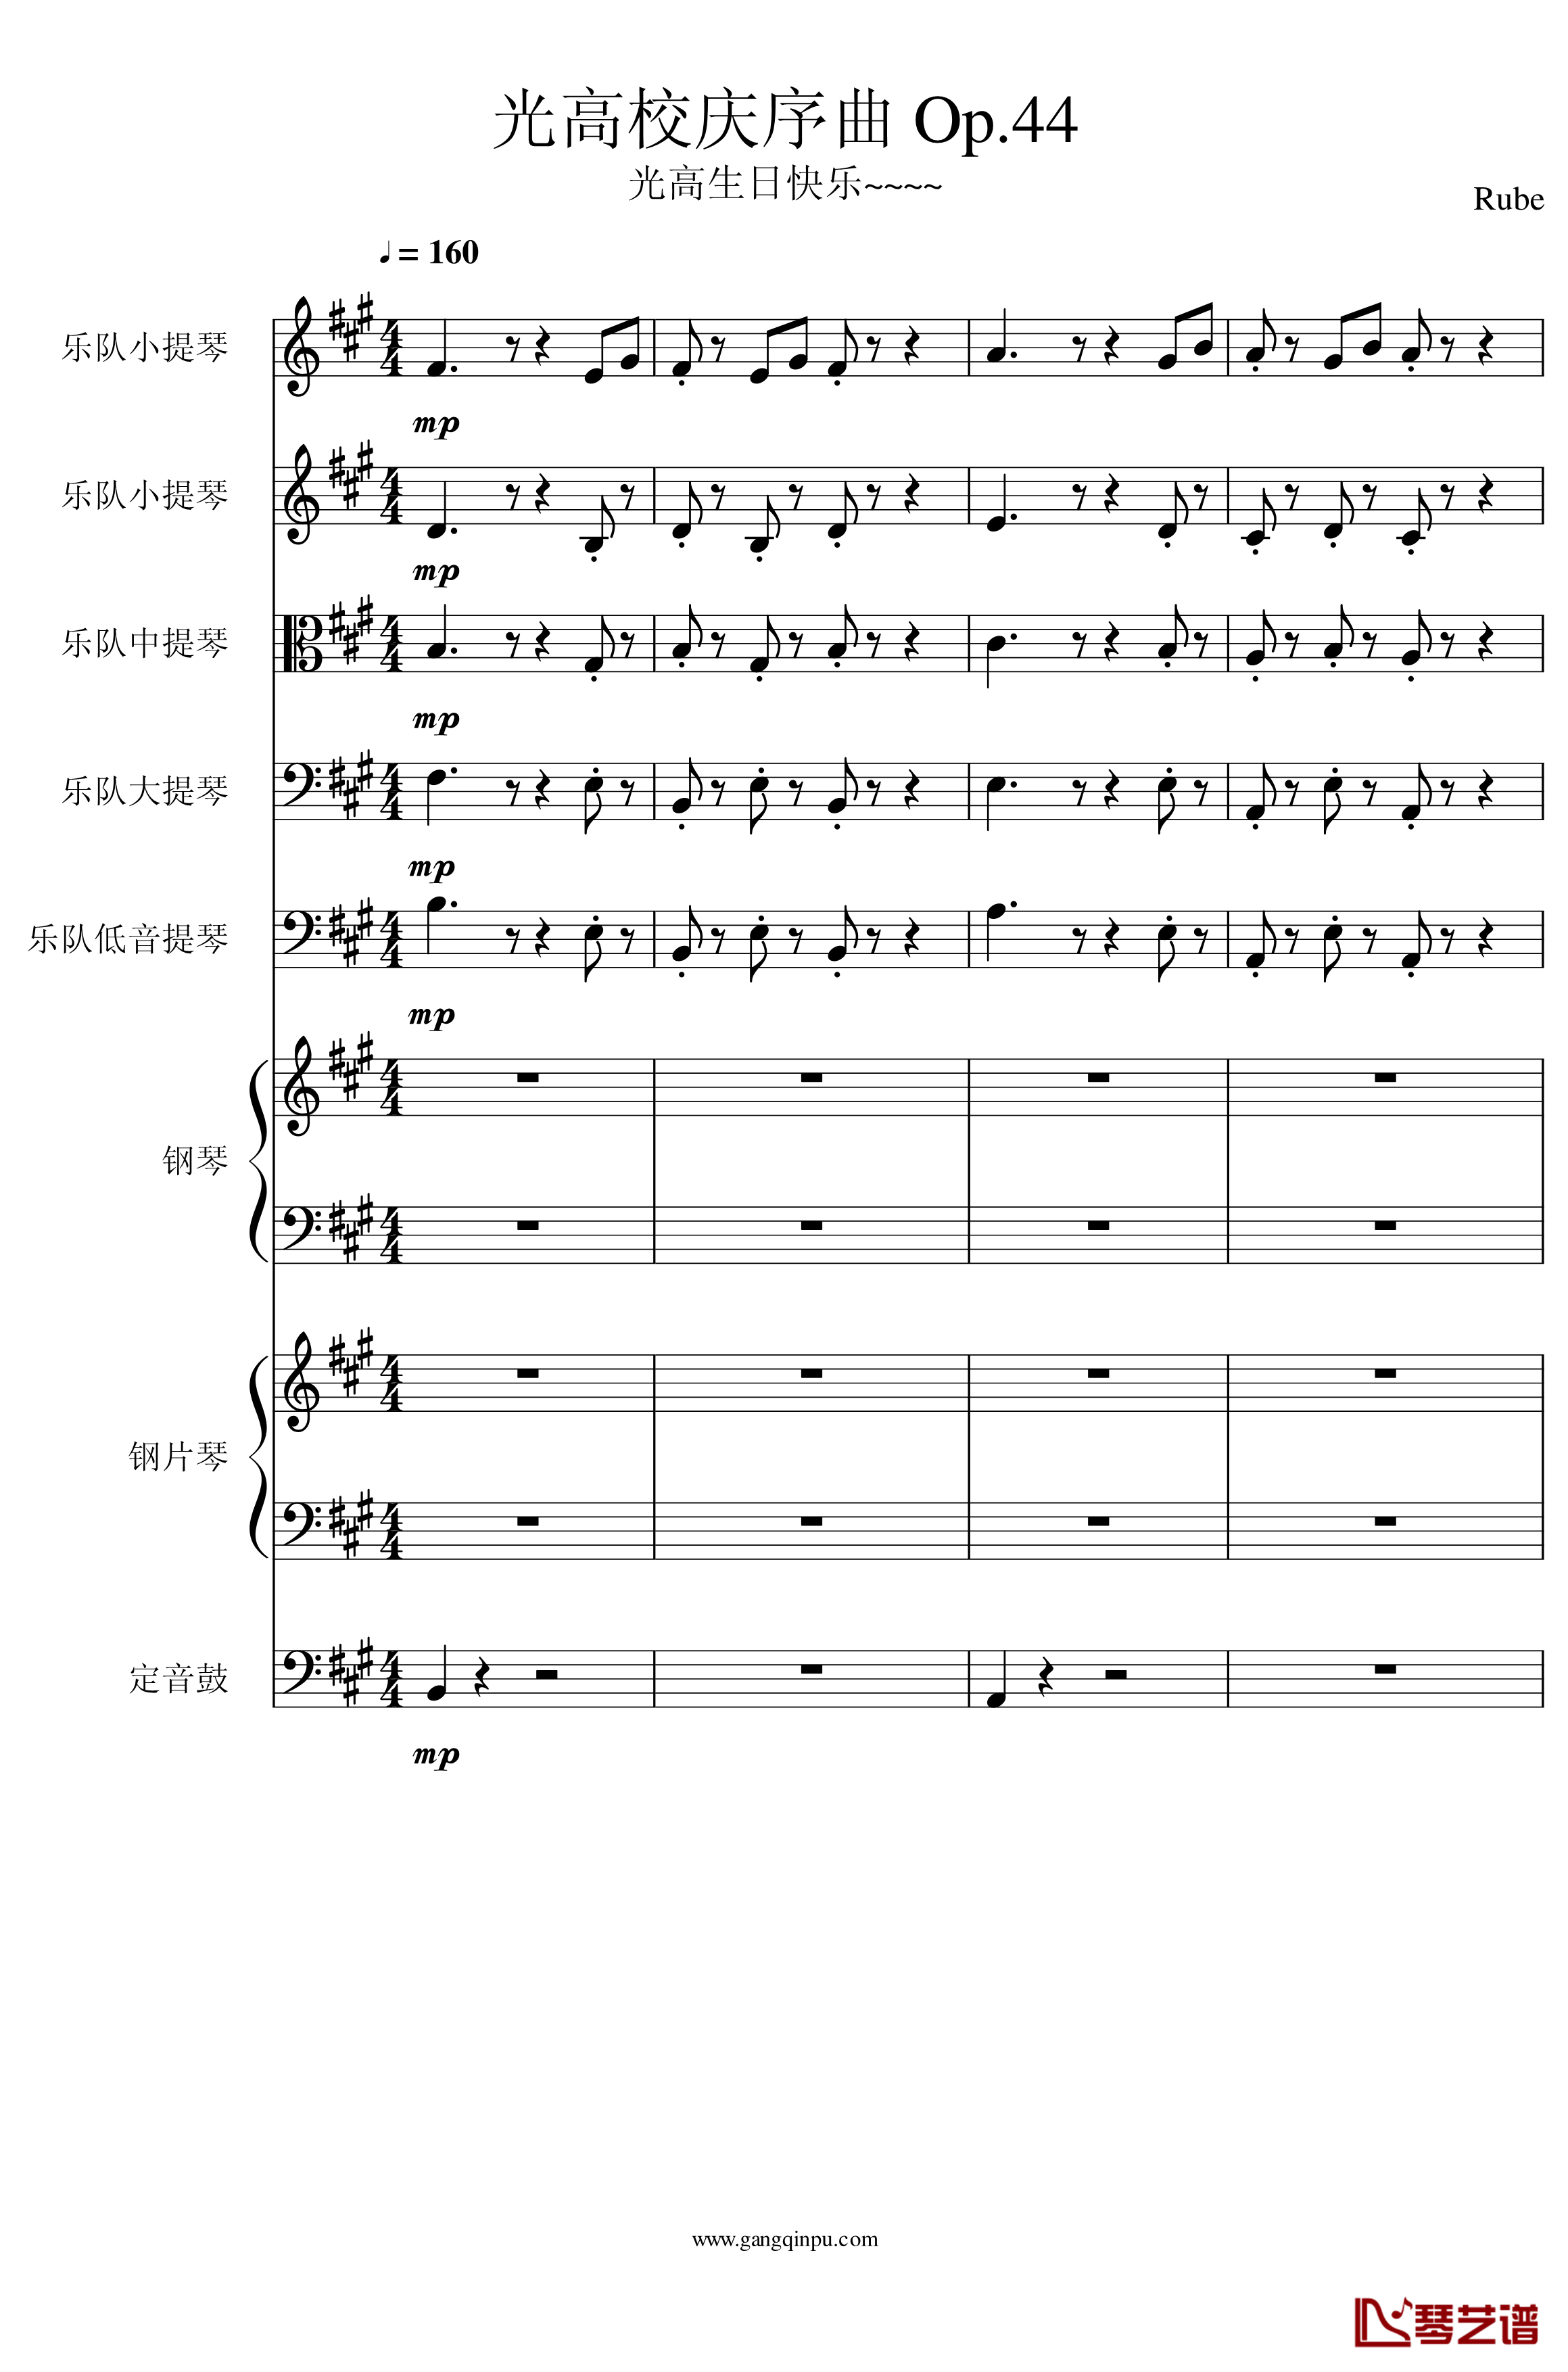 光高校庆序曲Op.44钢琴谱-一个球1